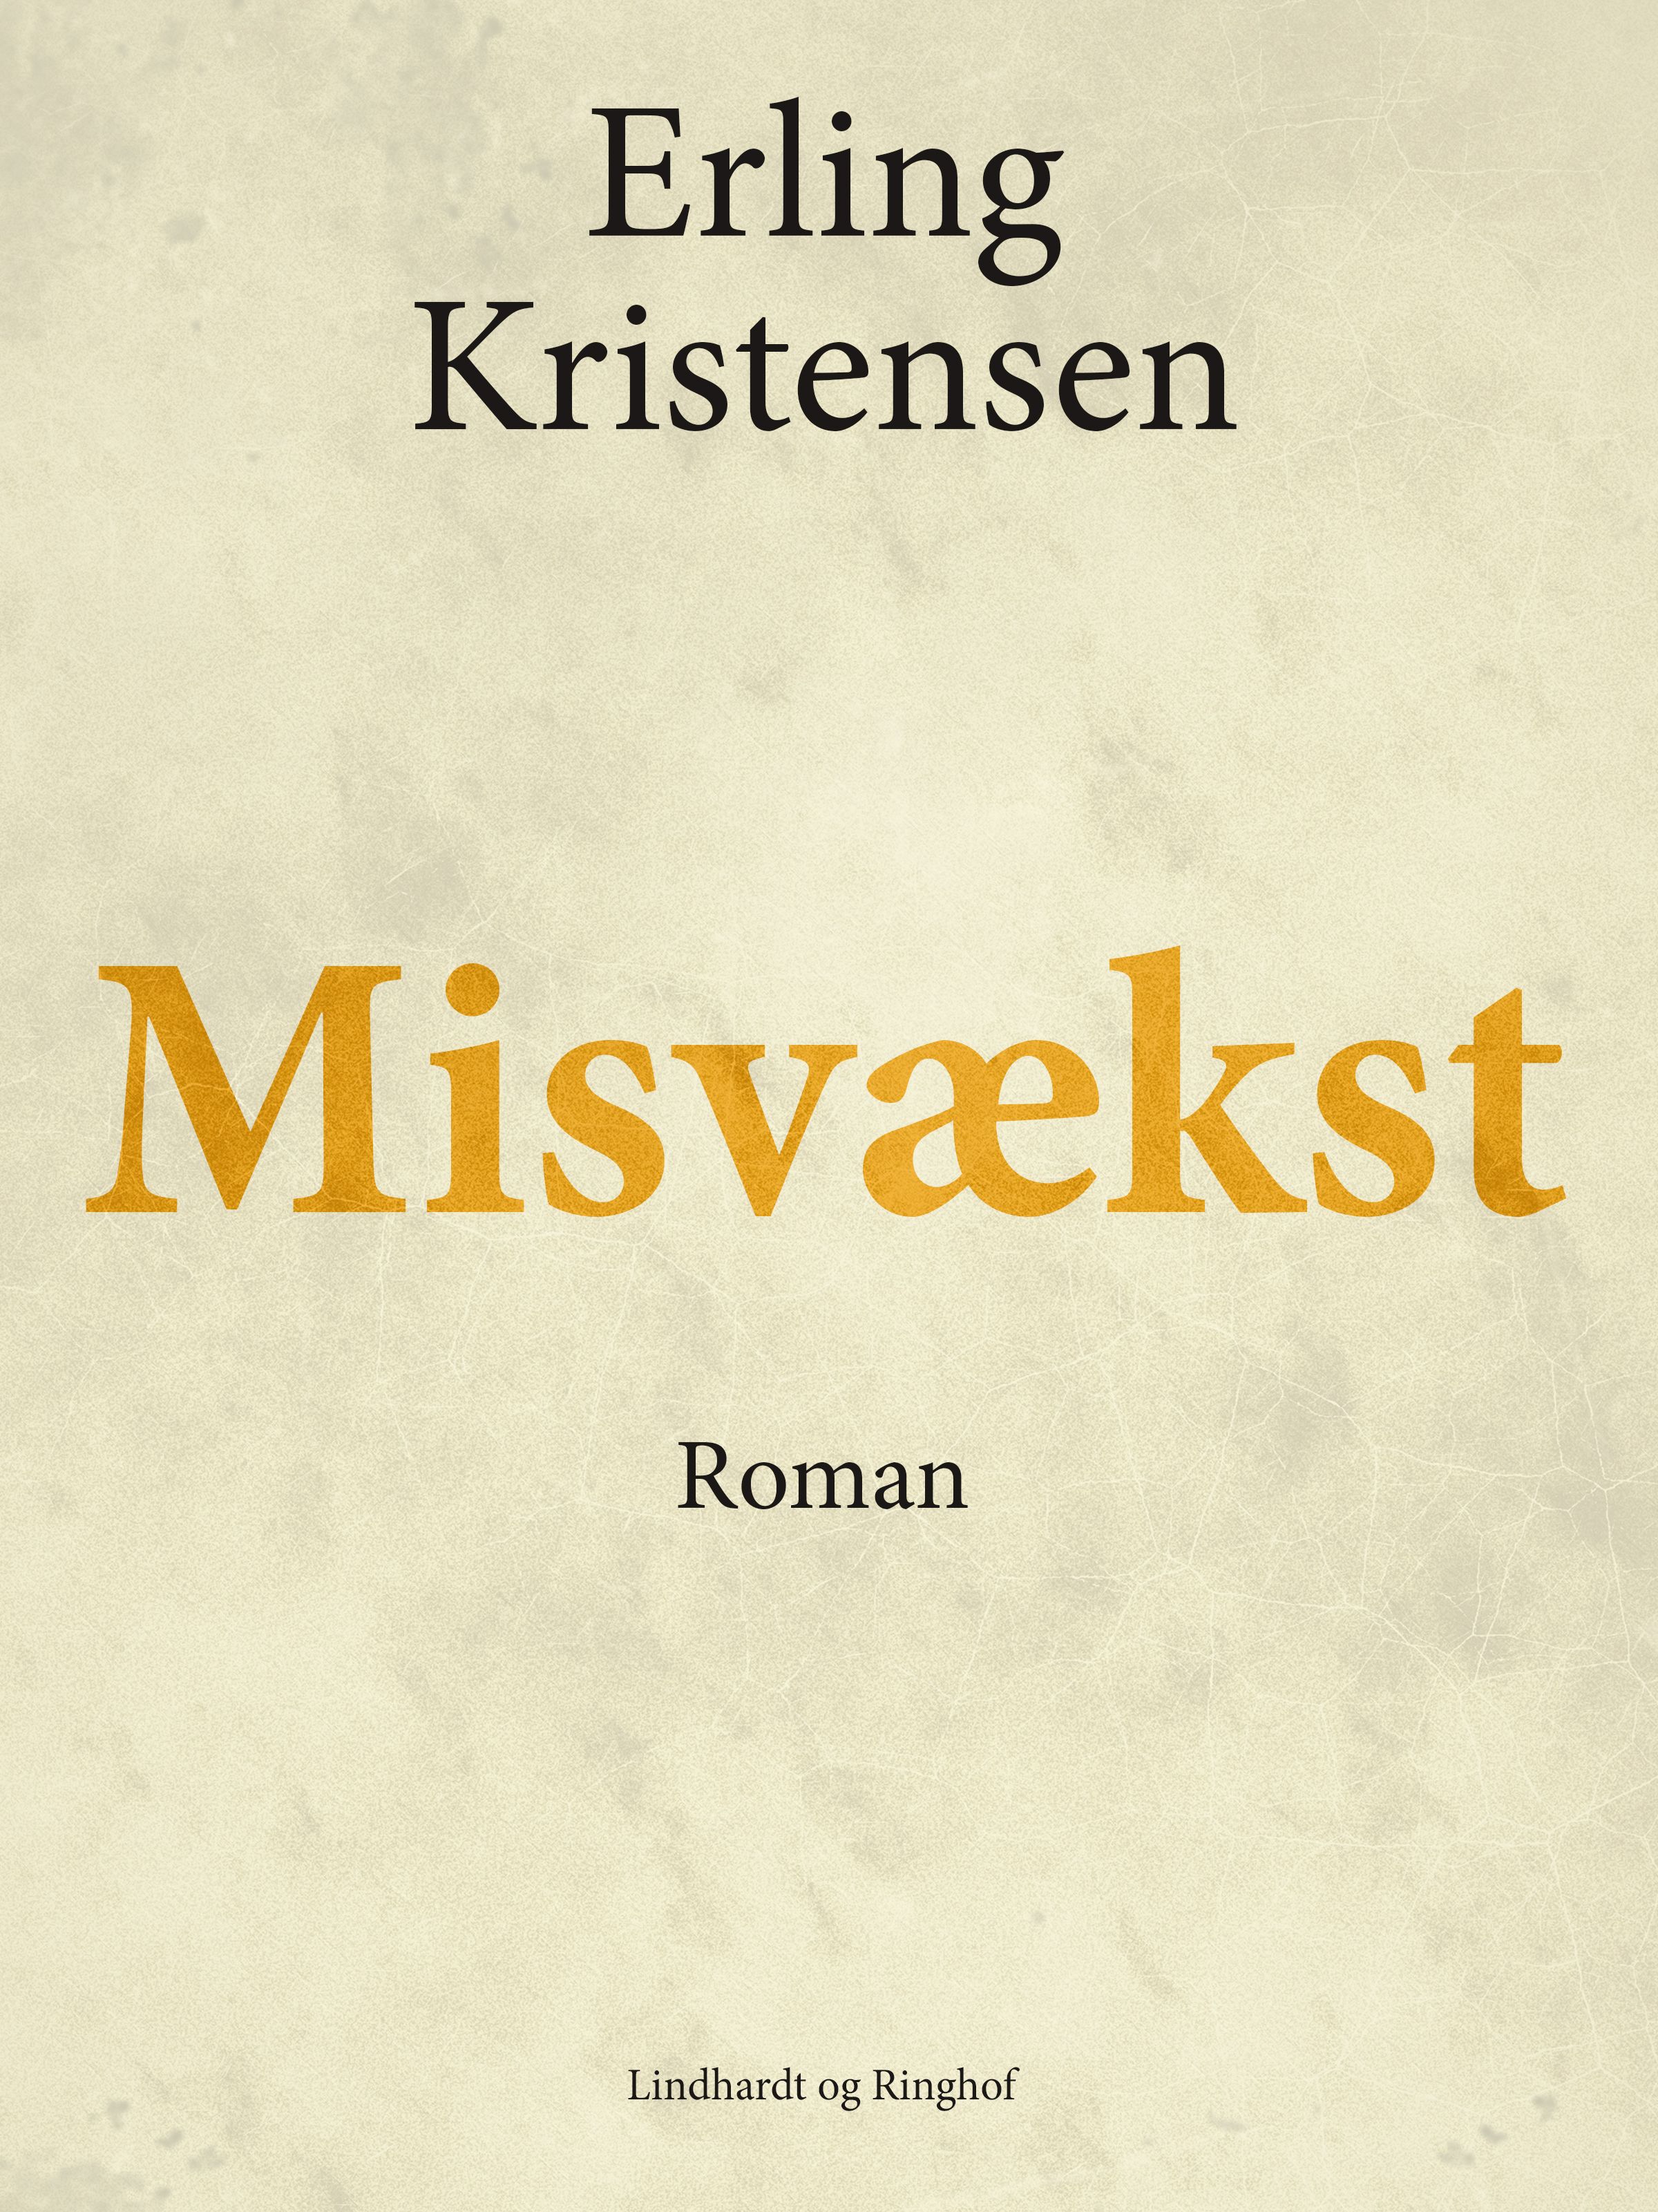 Misvækst, e-bok av Erling Kristensen